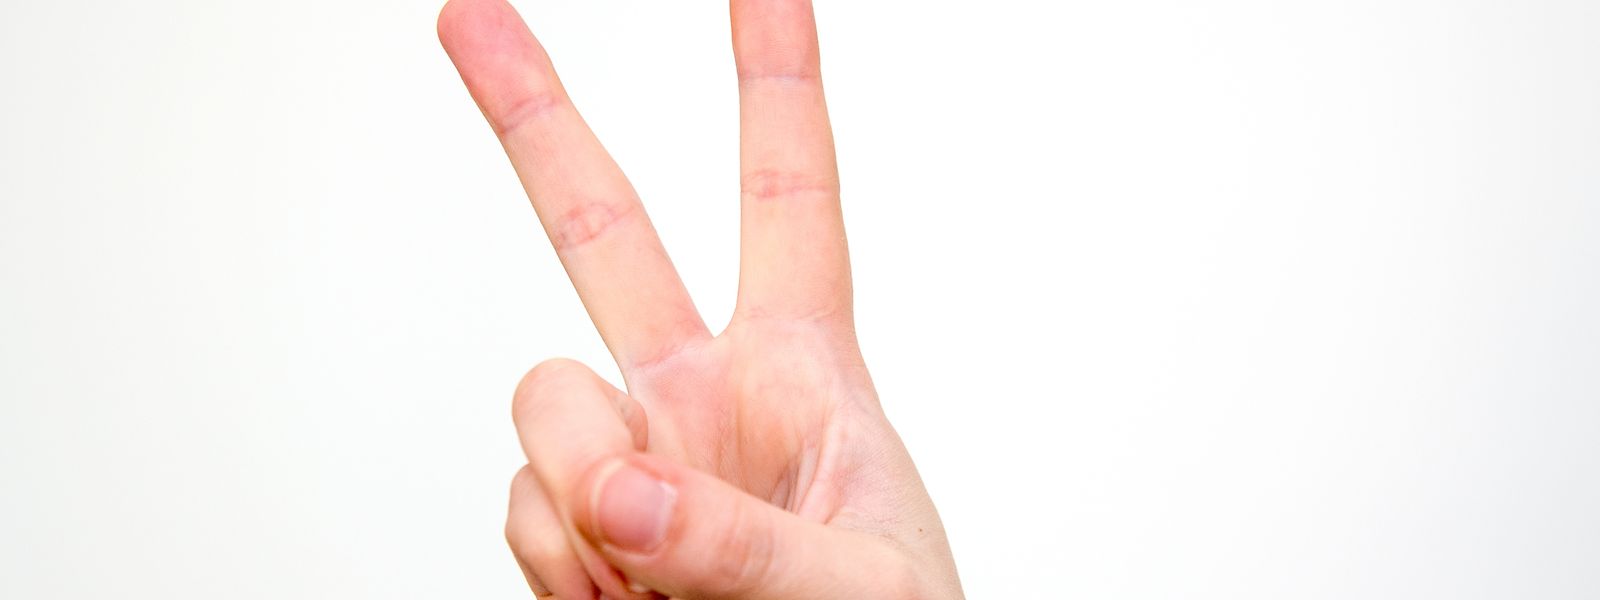 Das V-Zeichen aus Zeige- und Mittelfinger steht in Luxemburg für Erfolg oder Frieden - in Großbritannien, Irland, Neuseeland und Australien hingegen gilt es als Geste für einen Fluch. 